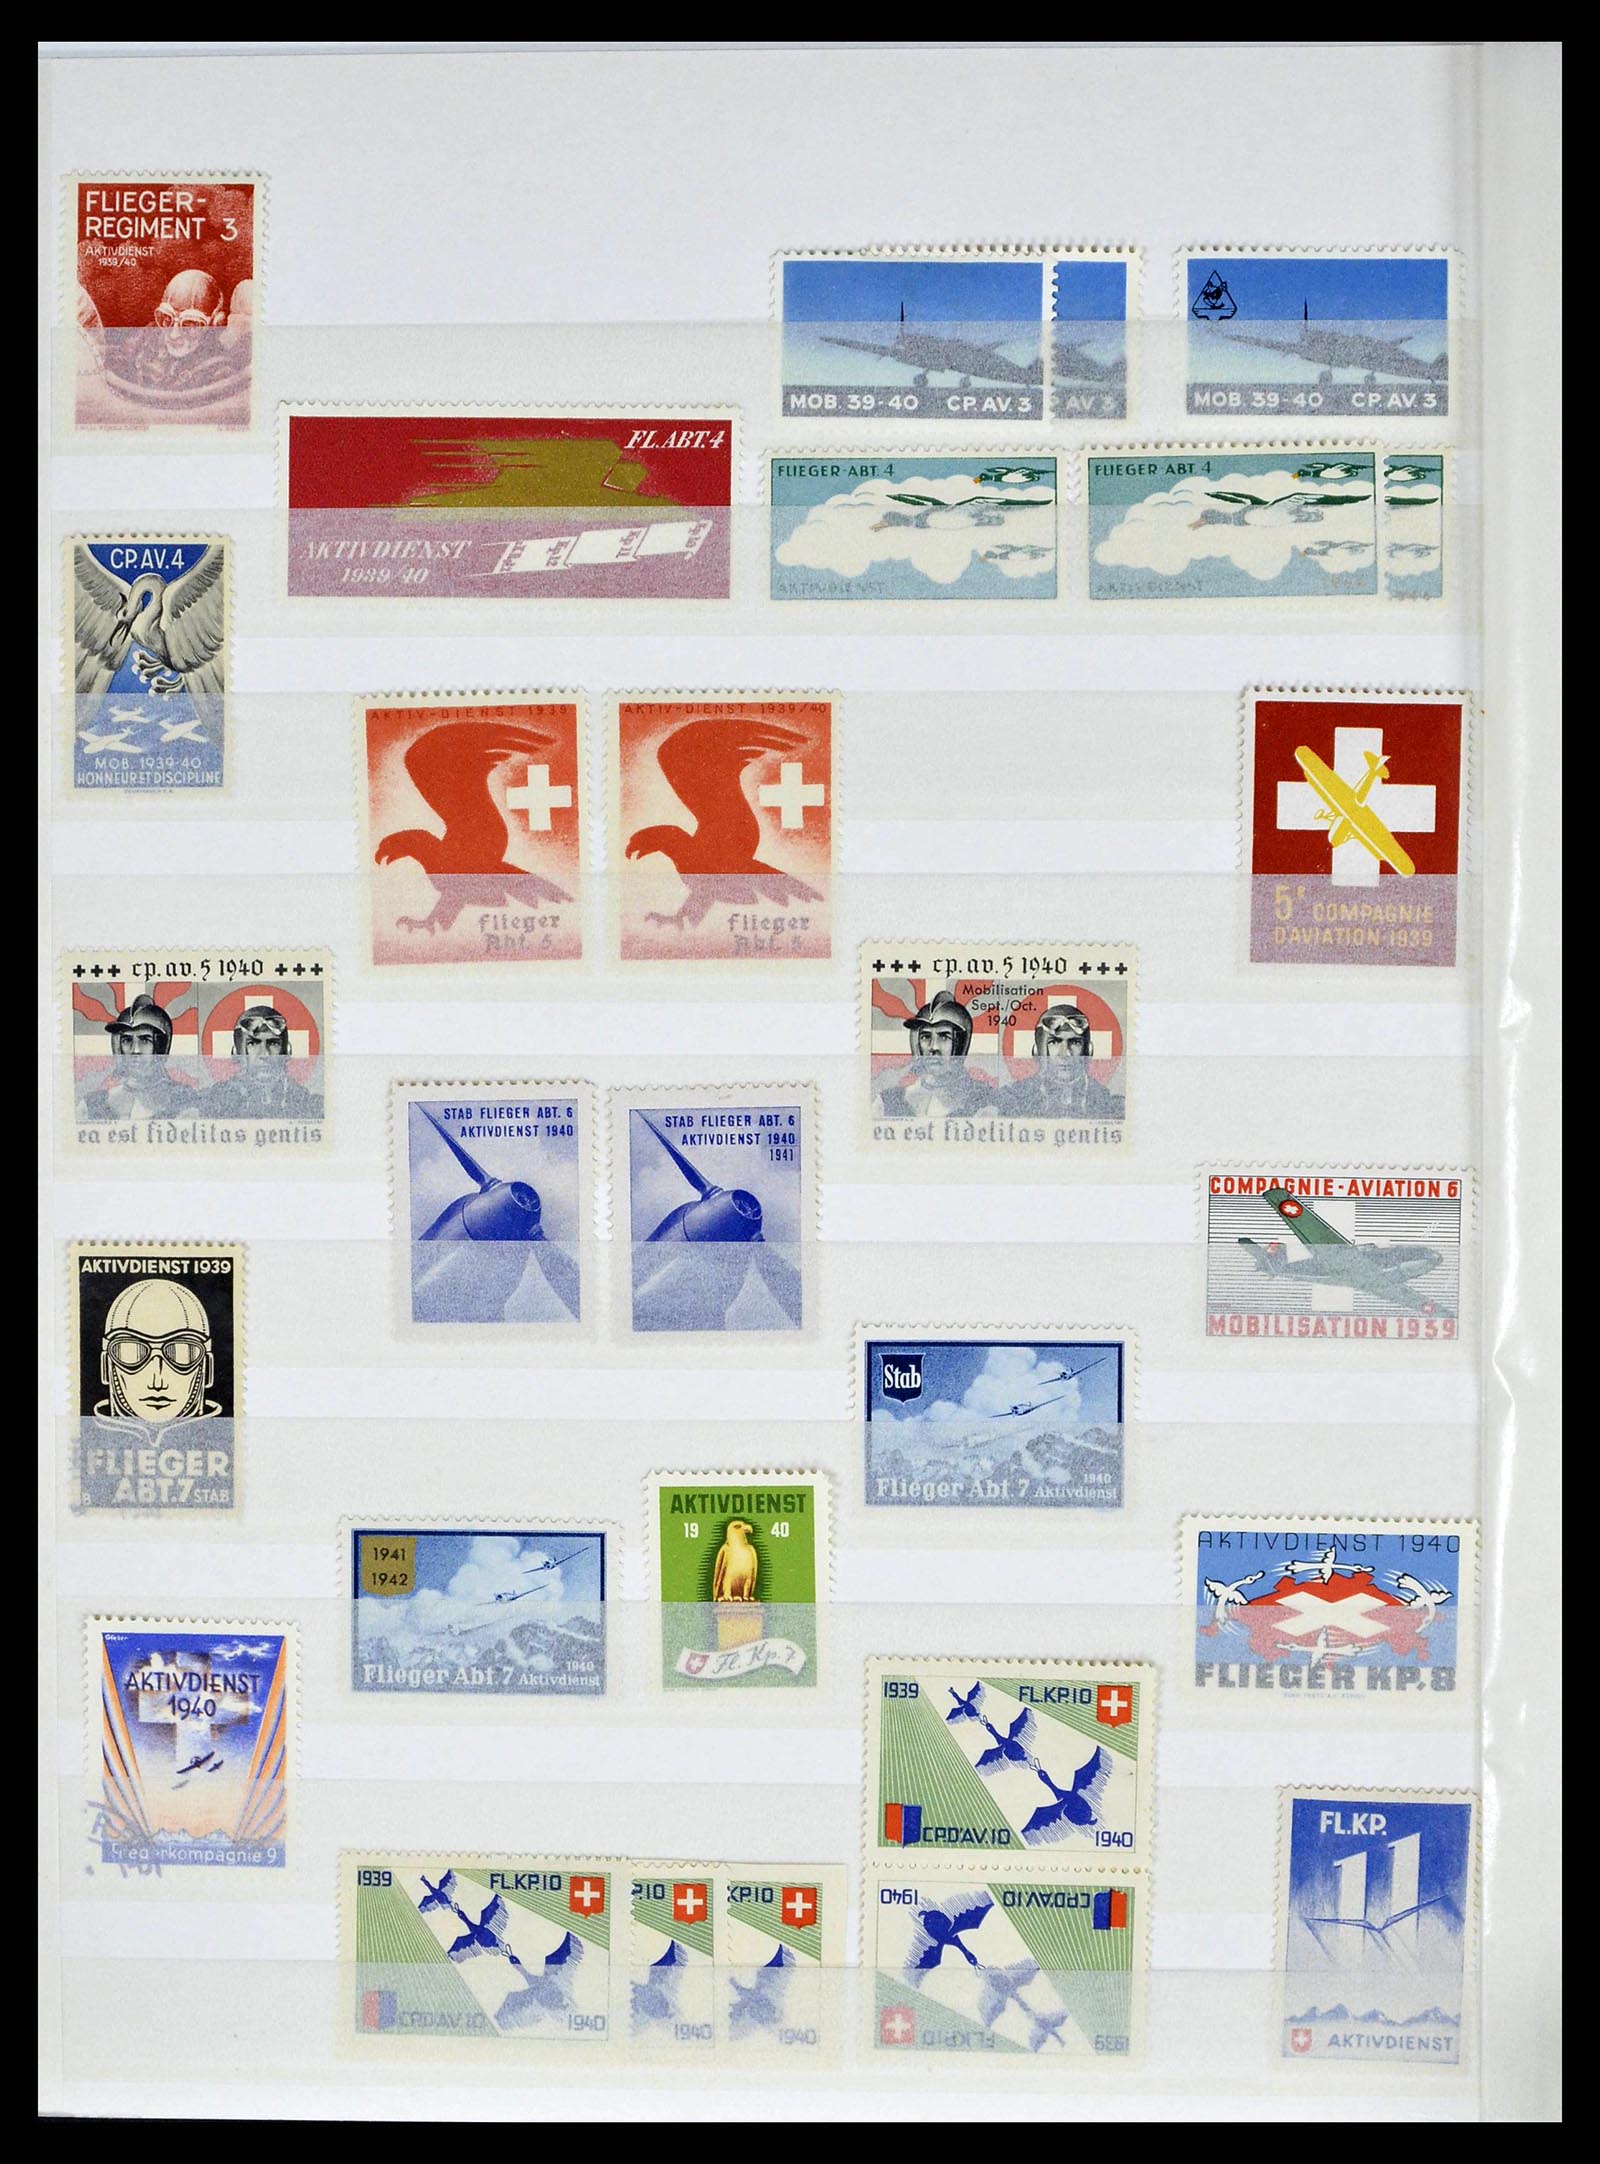 38695 0028 - Stamp collection 38695 Switzerland soldierstamps 1914-1945.